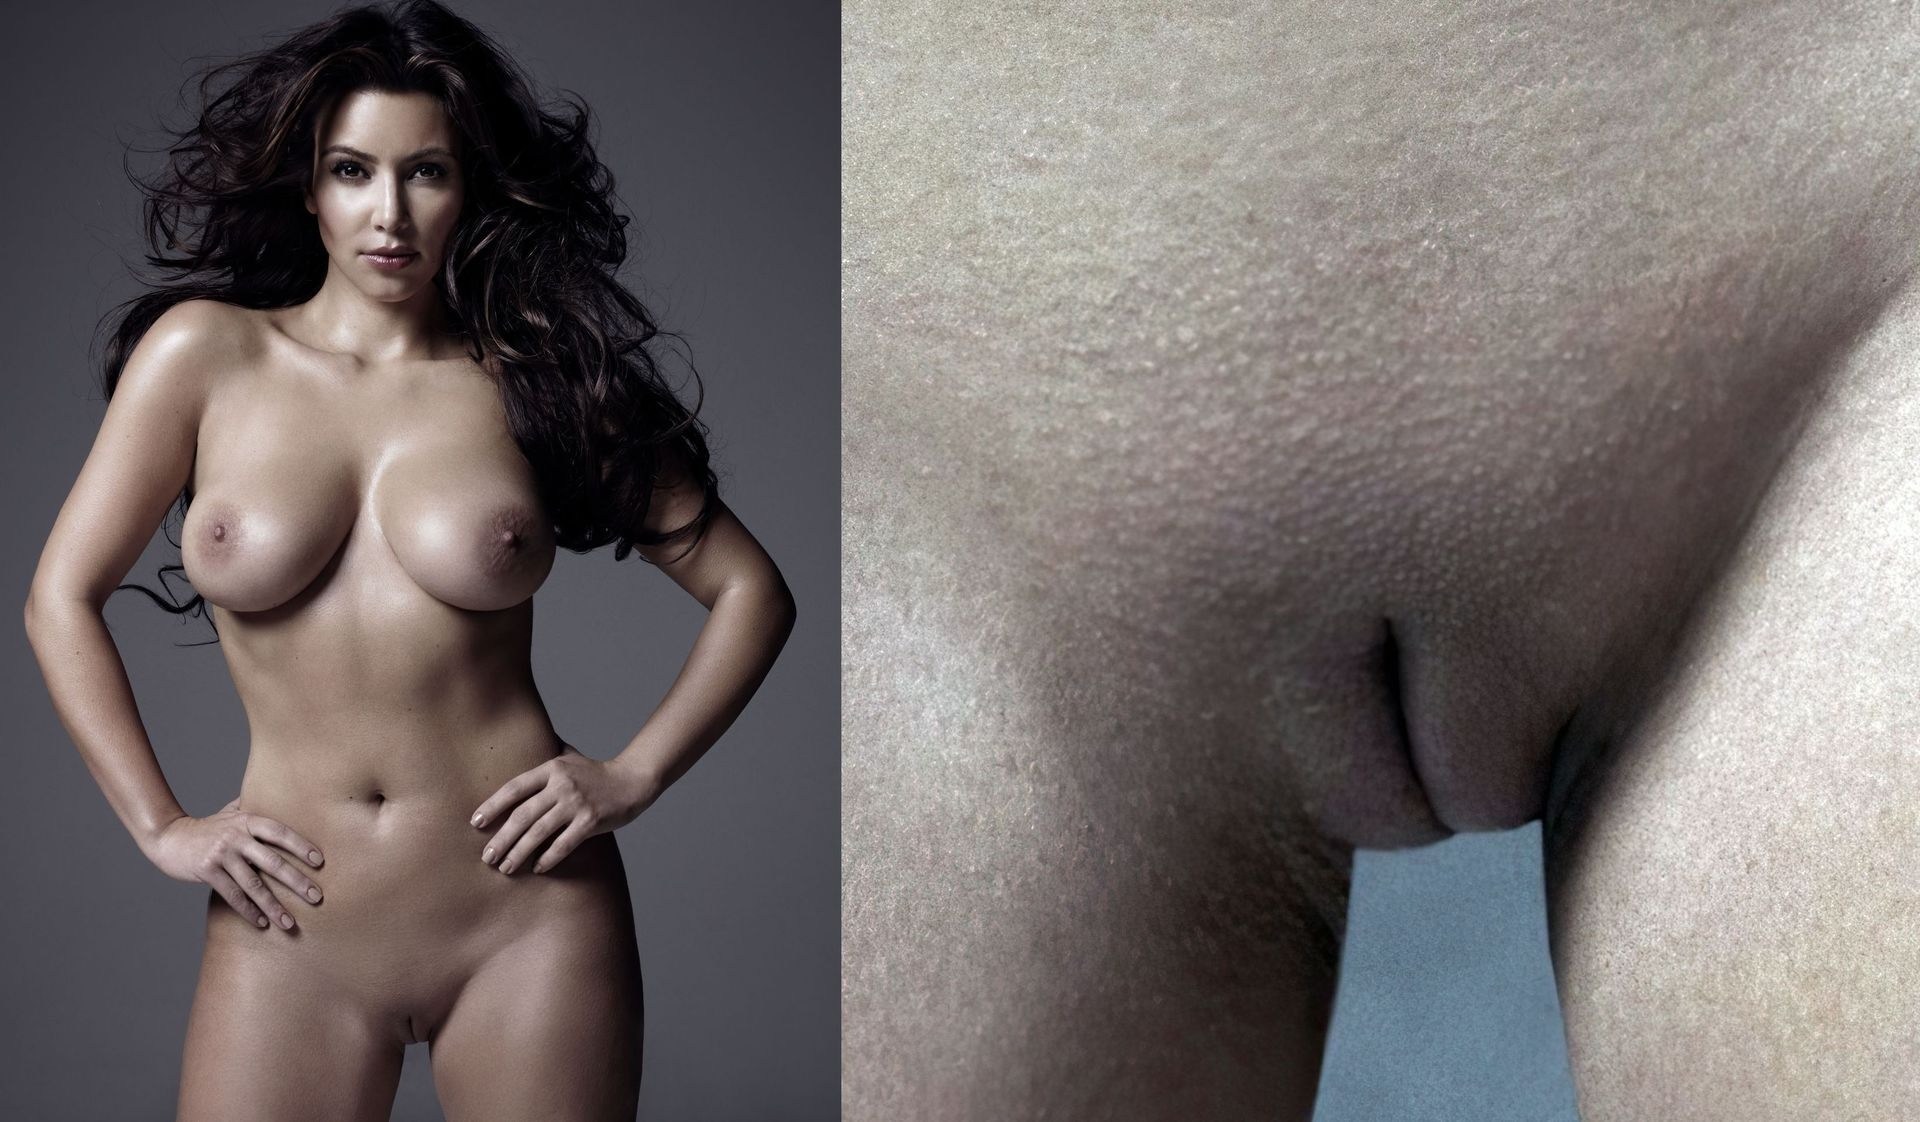 Kim kardashian leaked nude photos